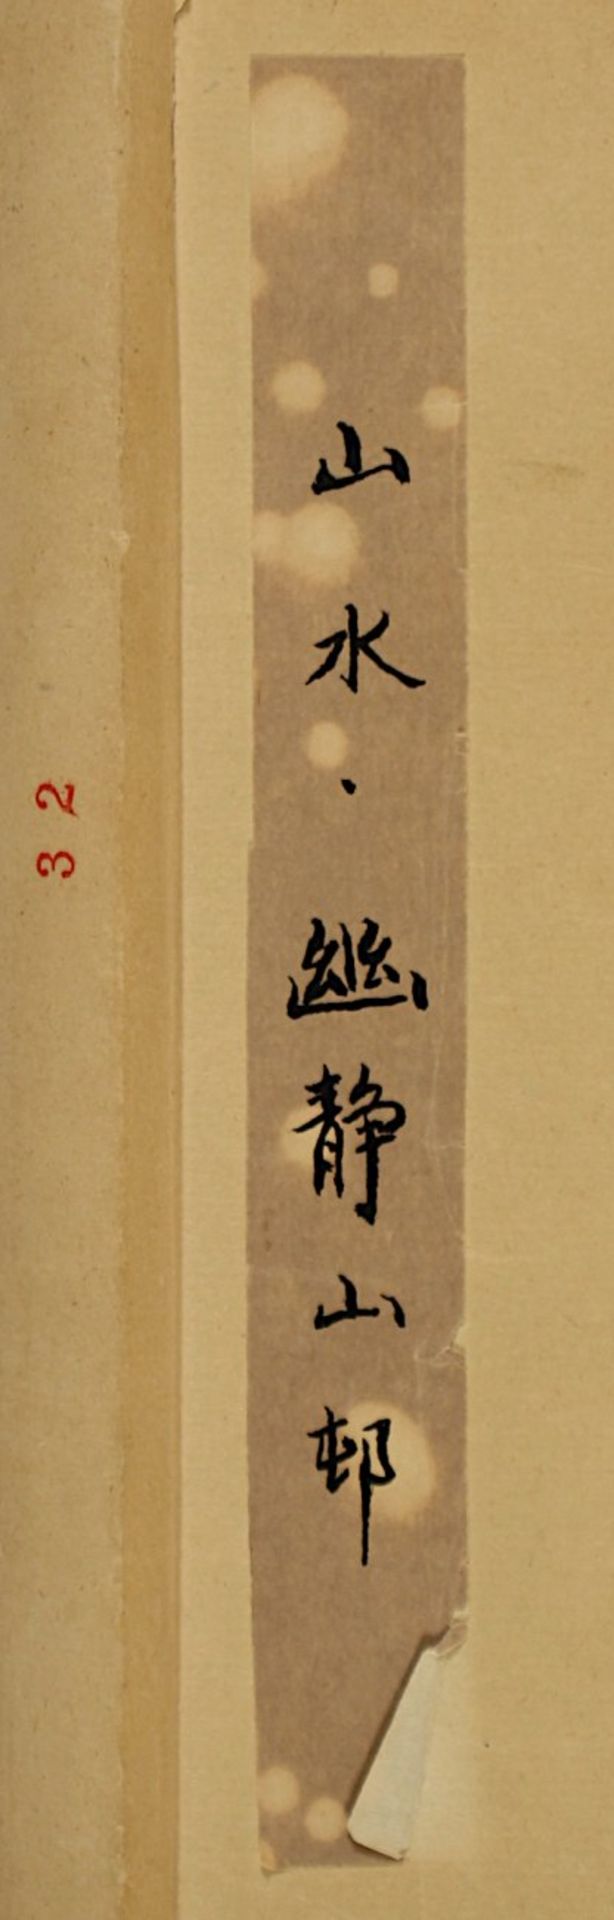 ROLLBILD, Tusche und Farben auf Papier, Landschaft, Aufschrift und Siegel, 68 x 45, montiert, CHINA, - Bild 3 aus 4